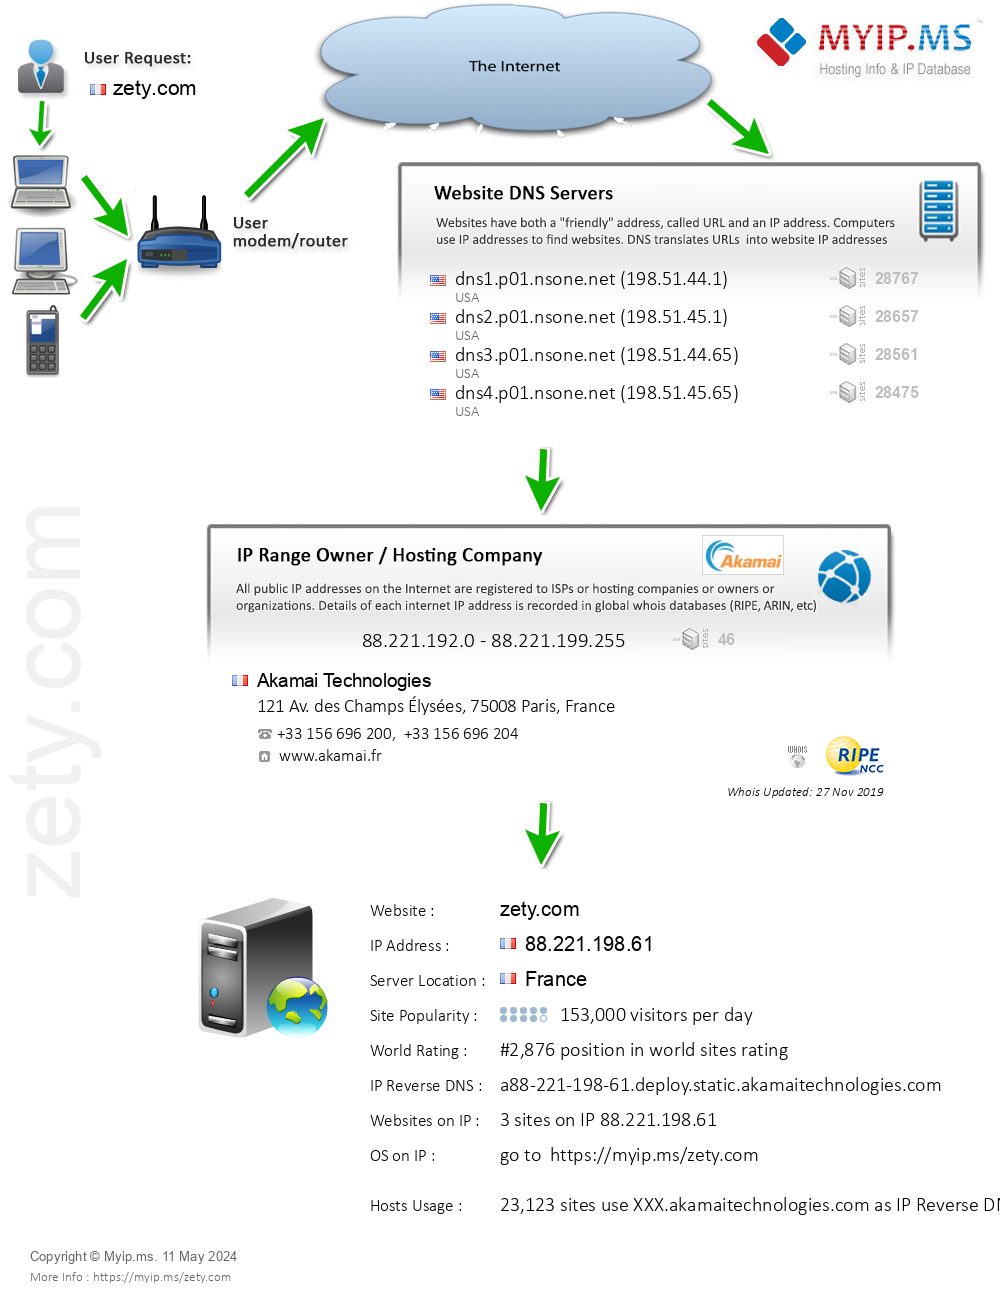 Zety.com - Website Hosting Visual IP Diagram